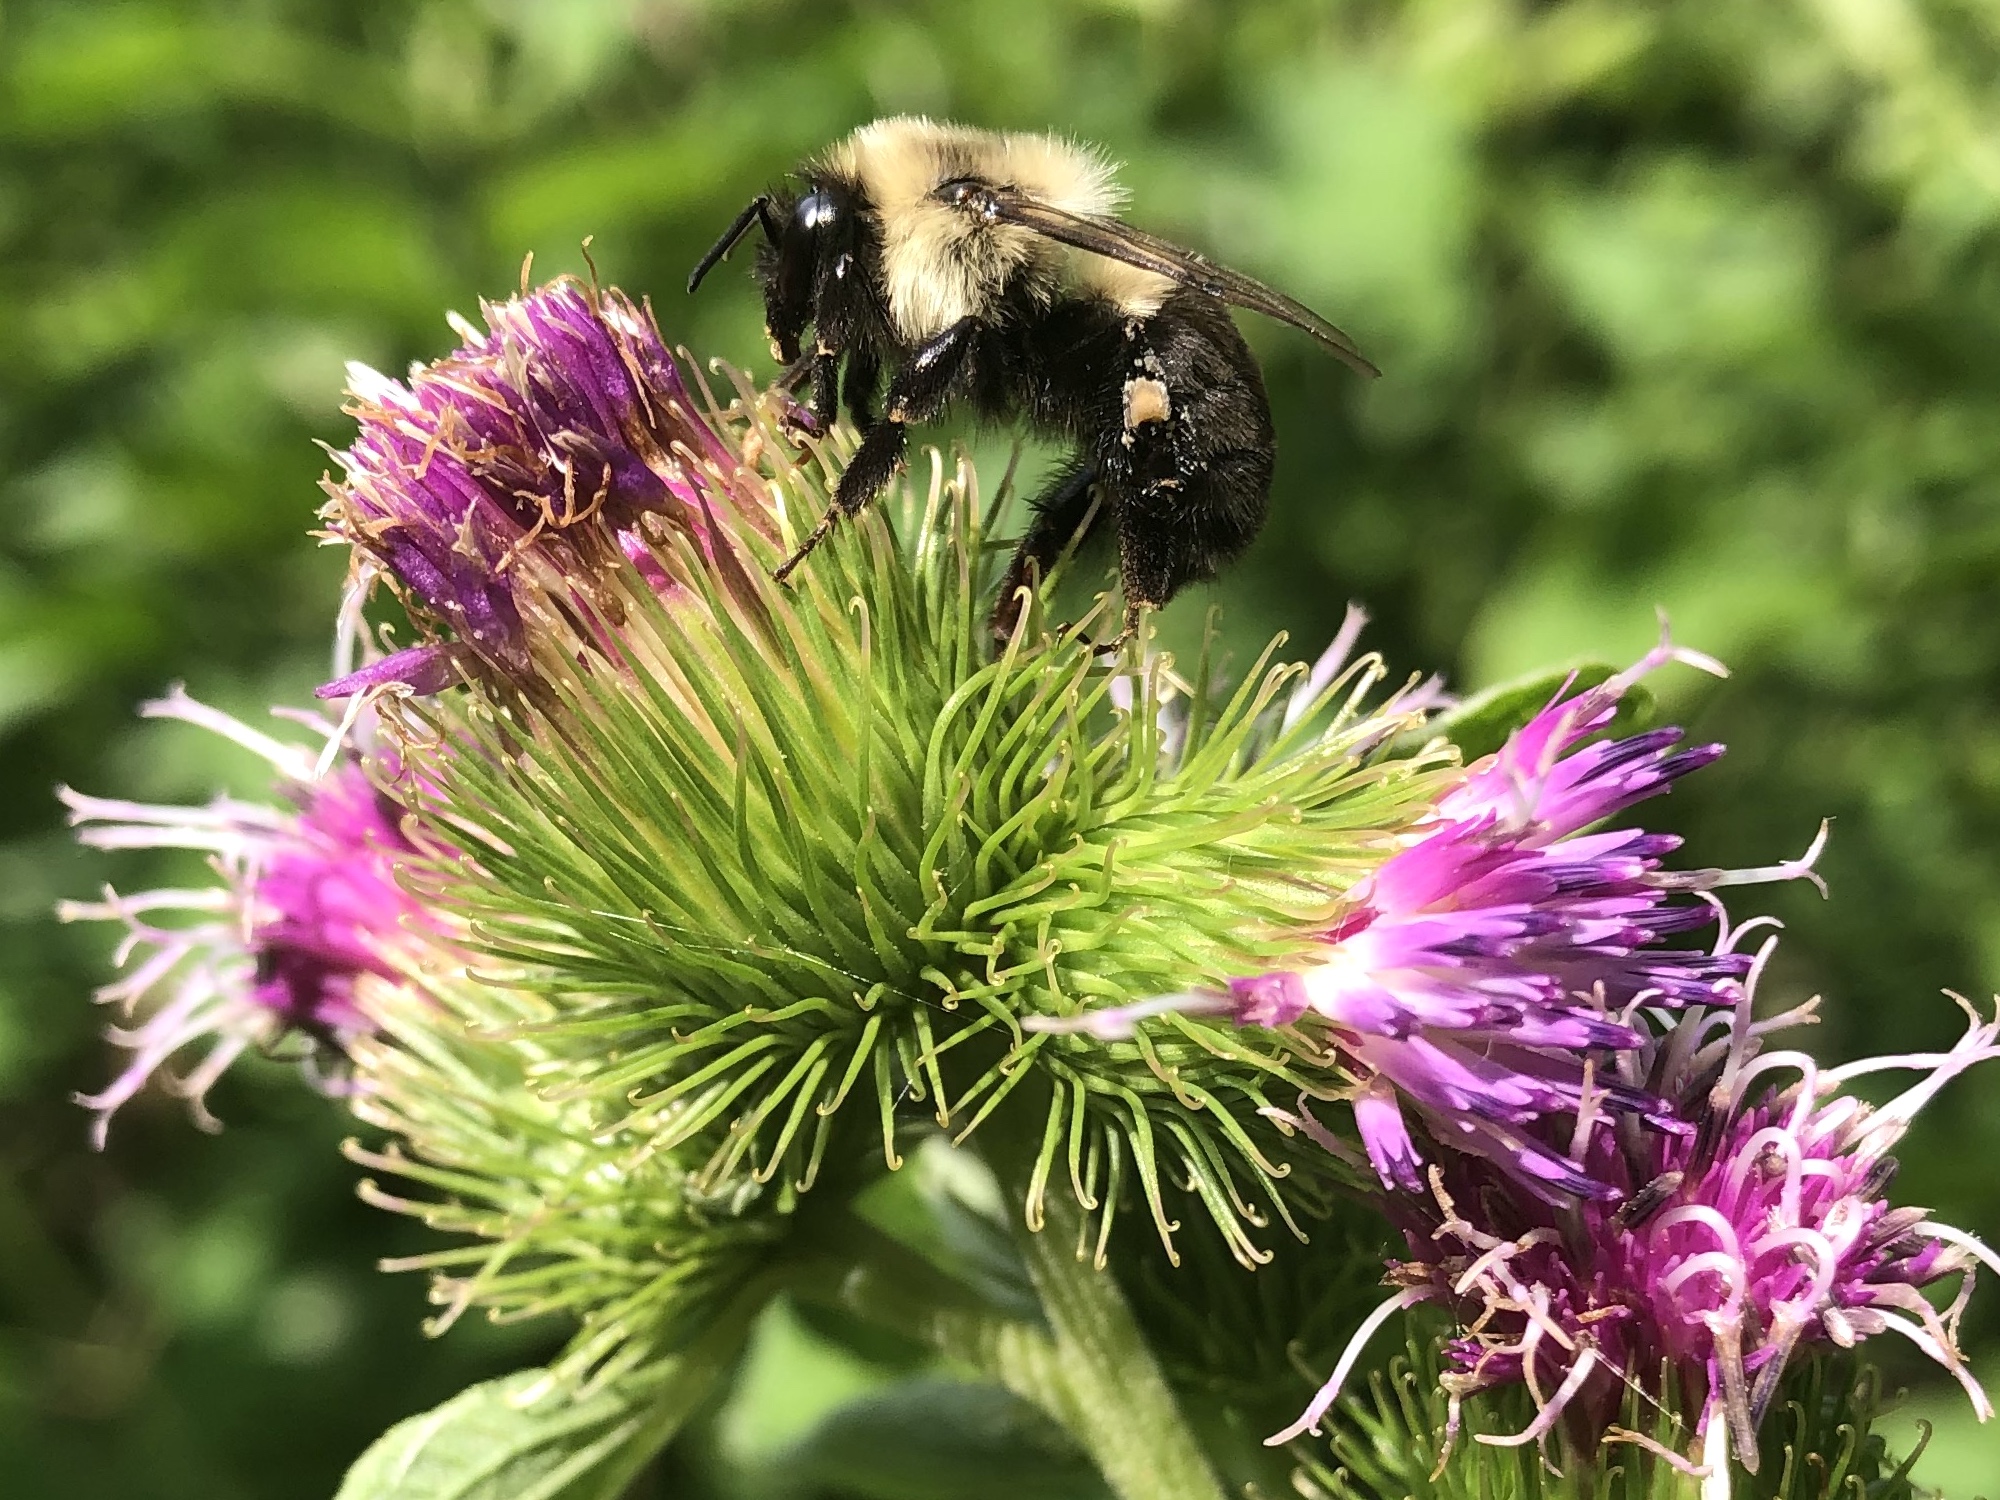 Bumblebee on Burdock on July 11, 2020.